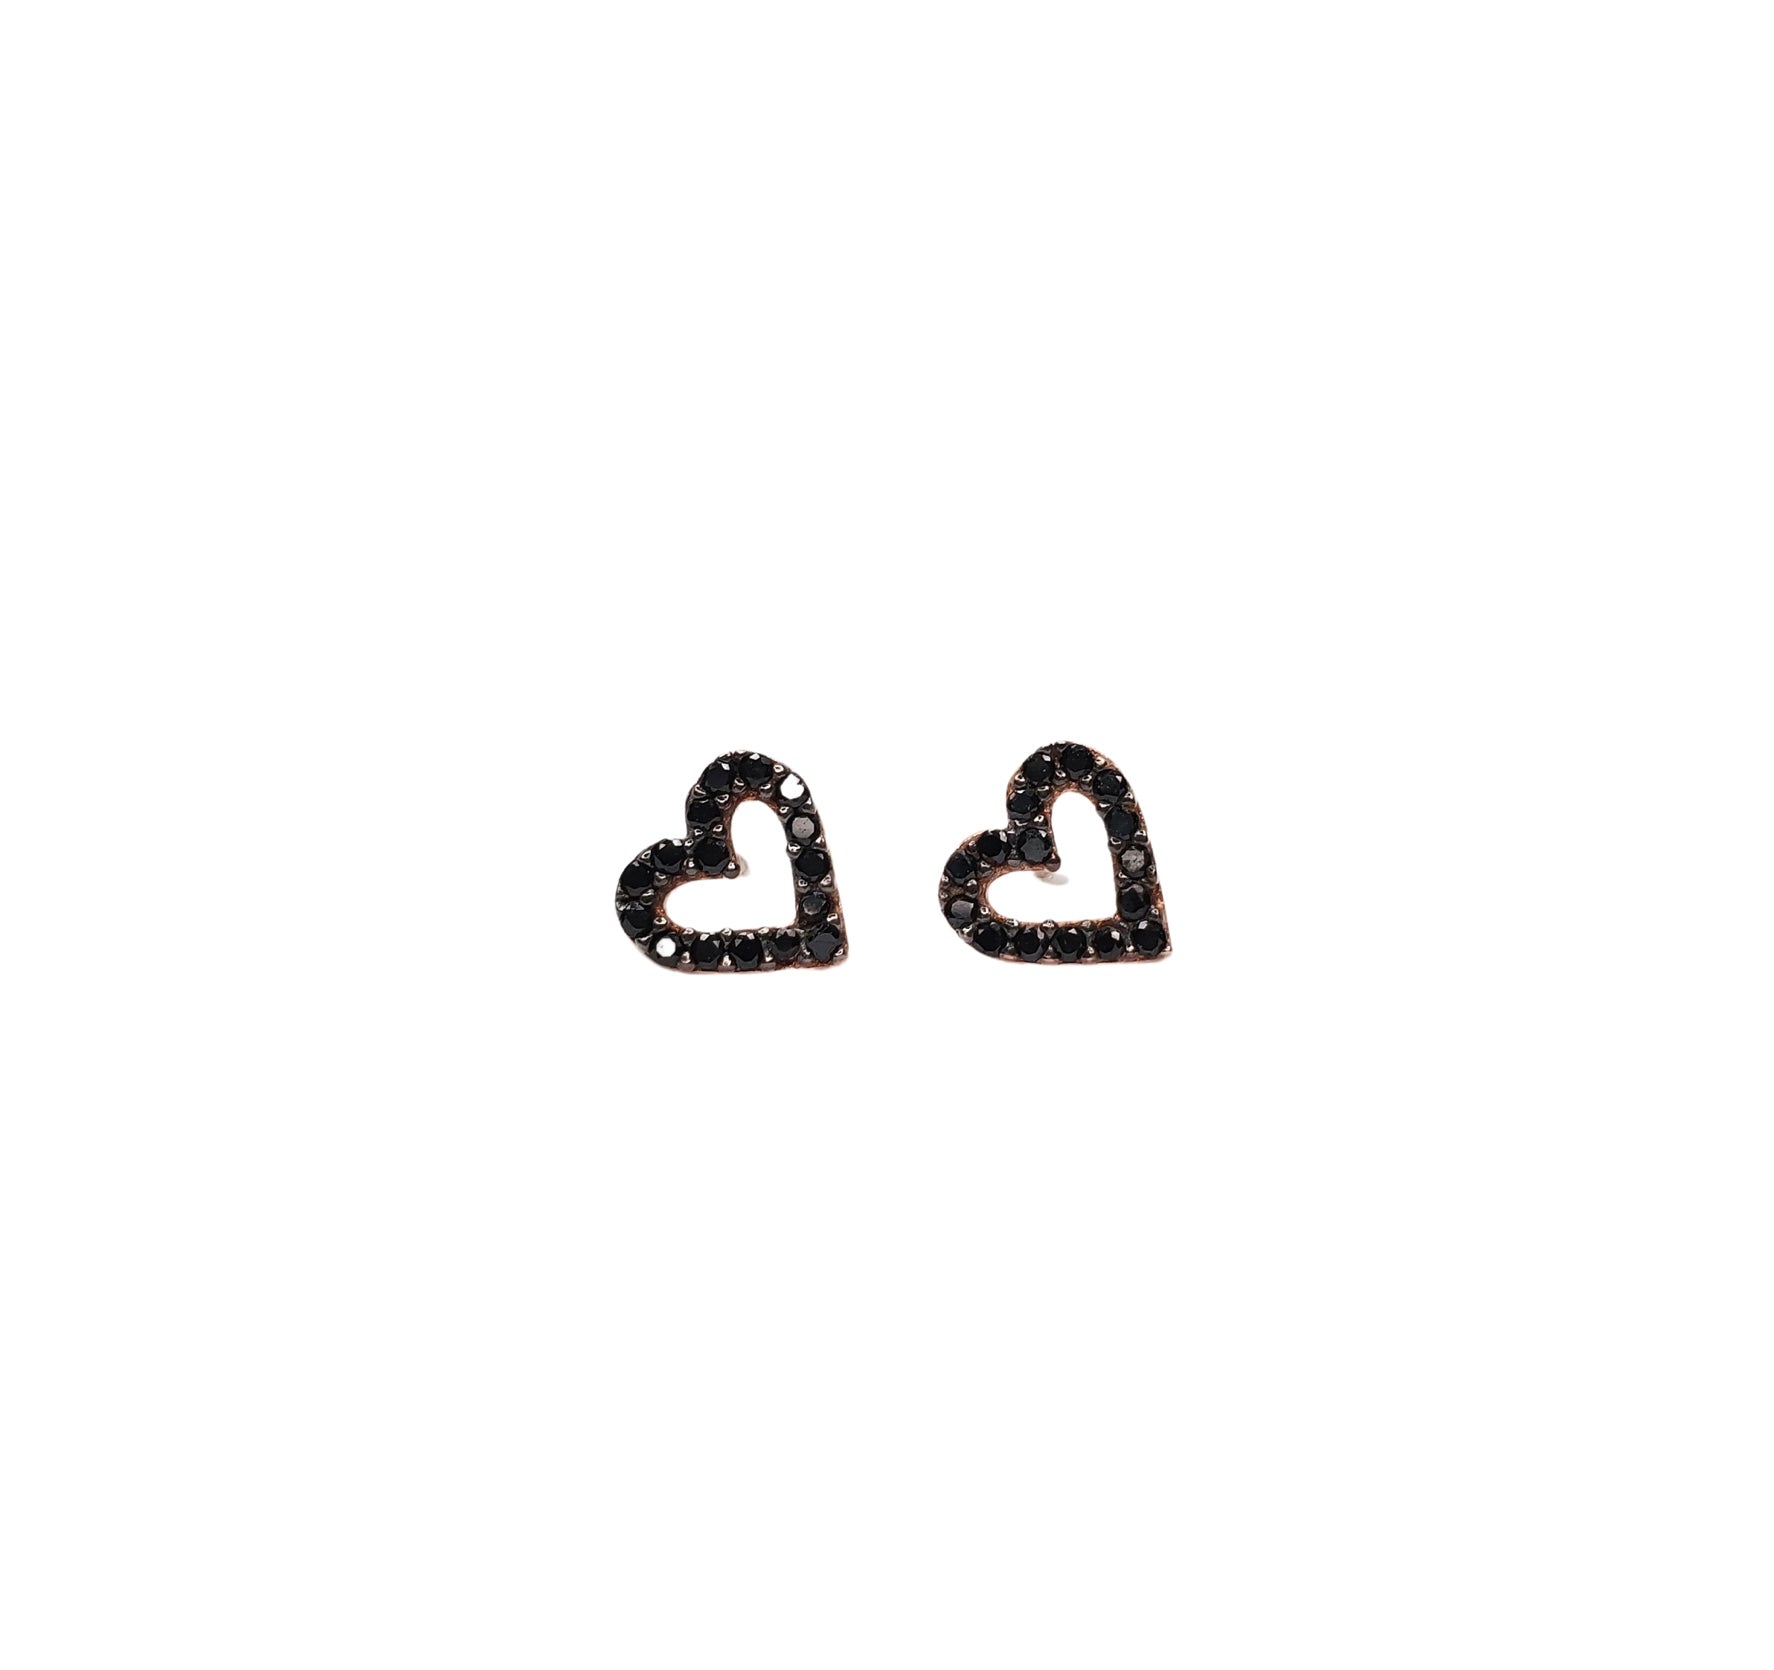 Black zirconia, heart shaped stud earrings.